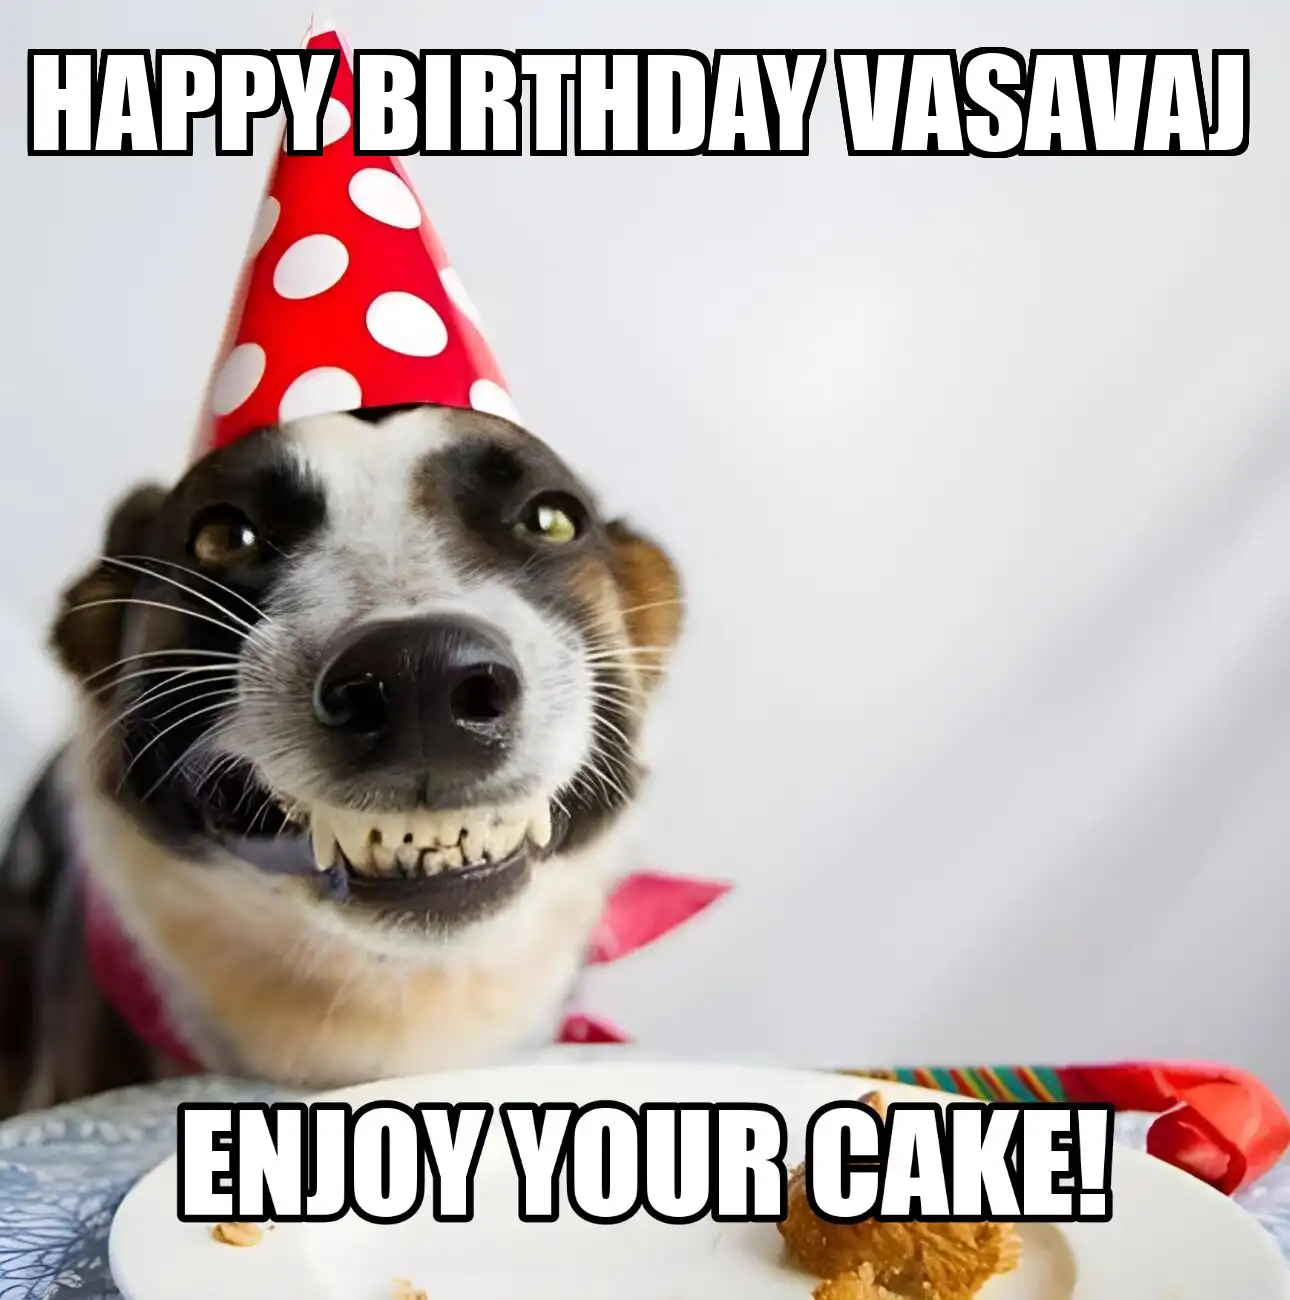 Happy Birthday Vasavaj Enjoy Your Cake Dog Meme